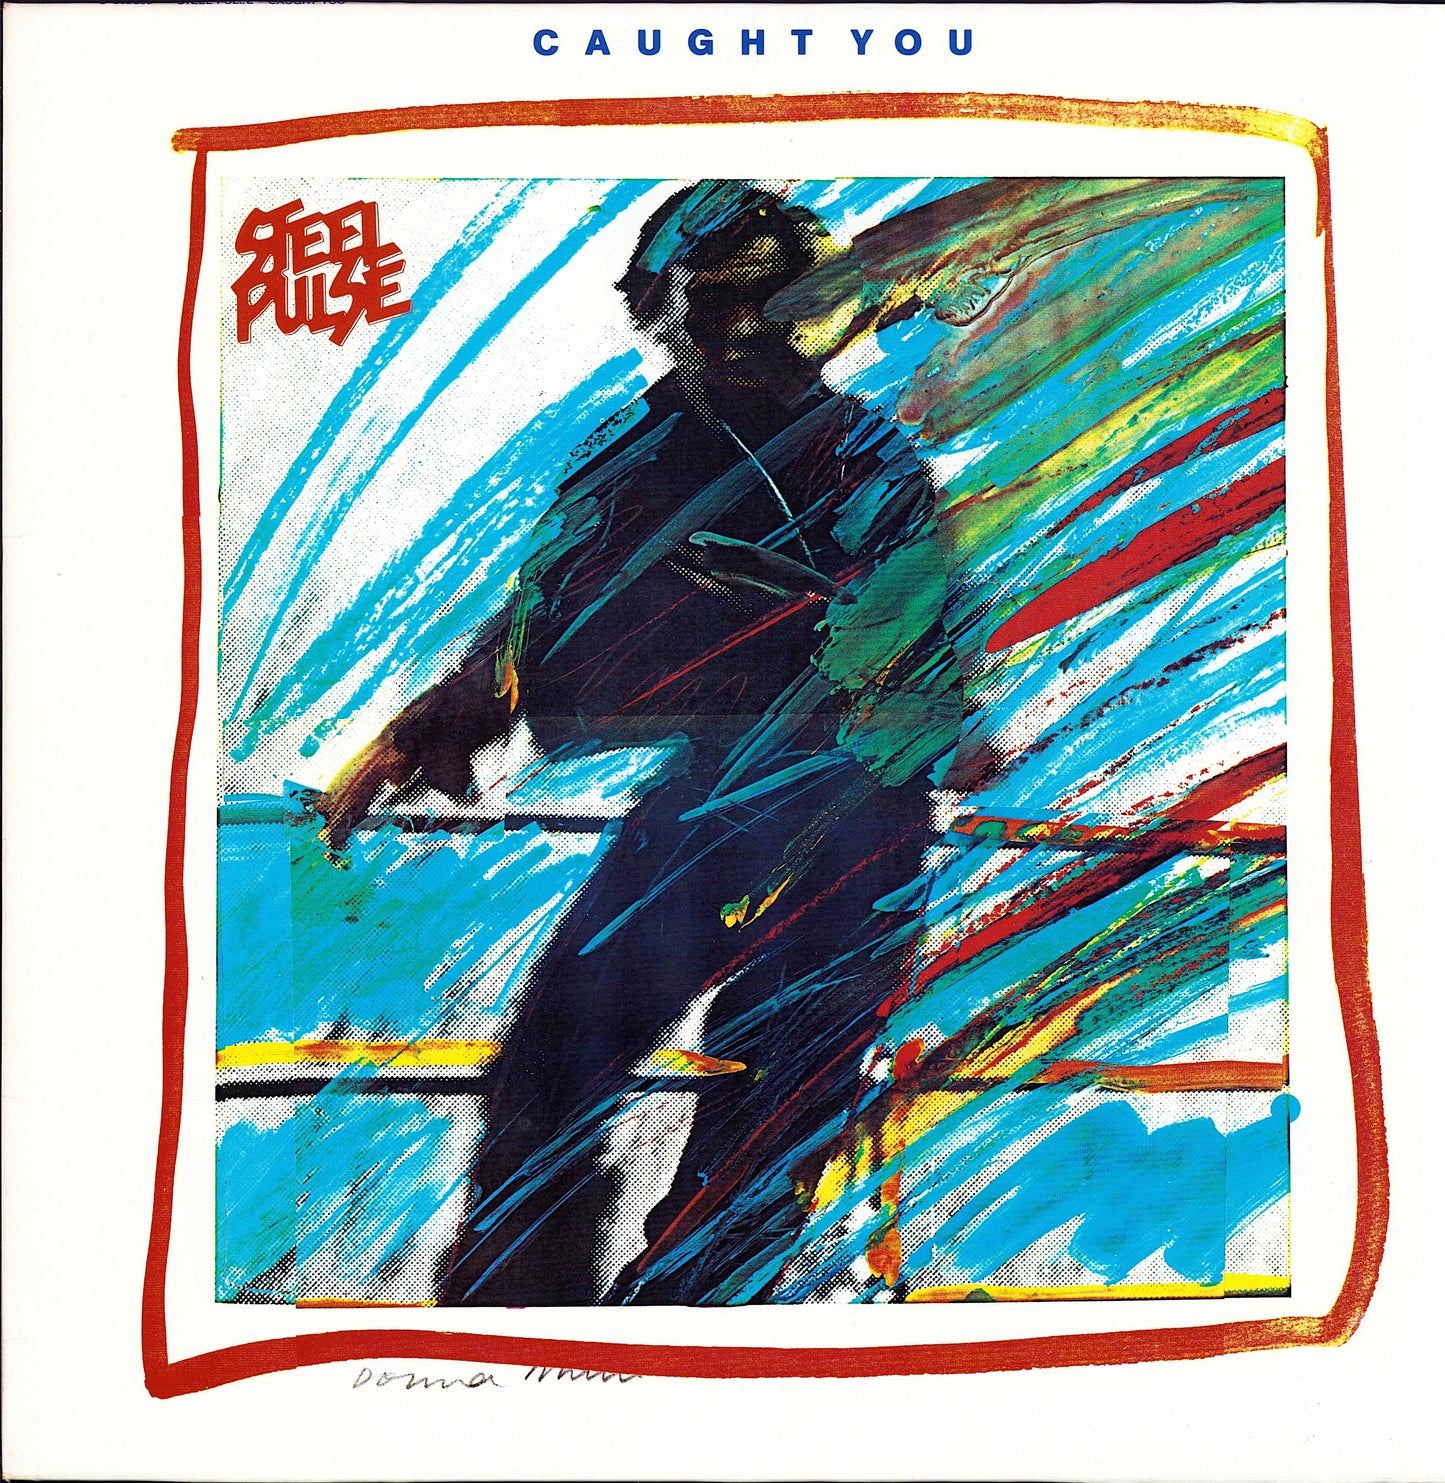 Steel Pulse - Caught You Vinyl LP